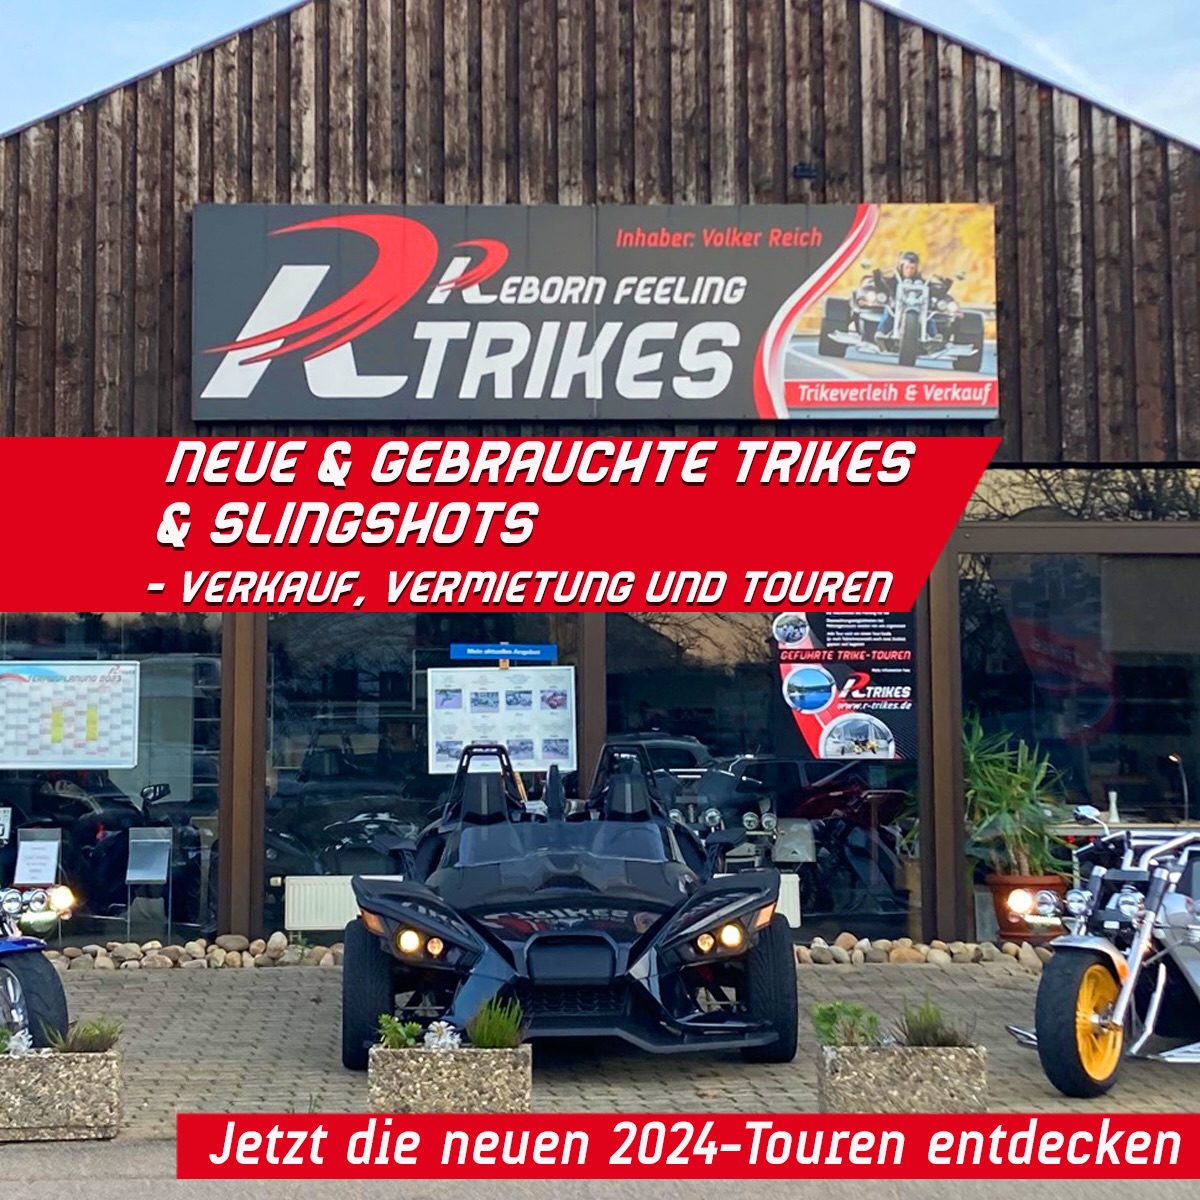 R-Trikes Trike Verkauf, Vermietung und Touren